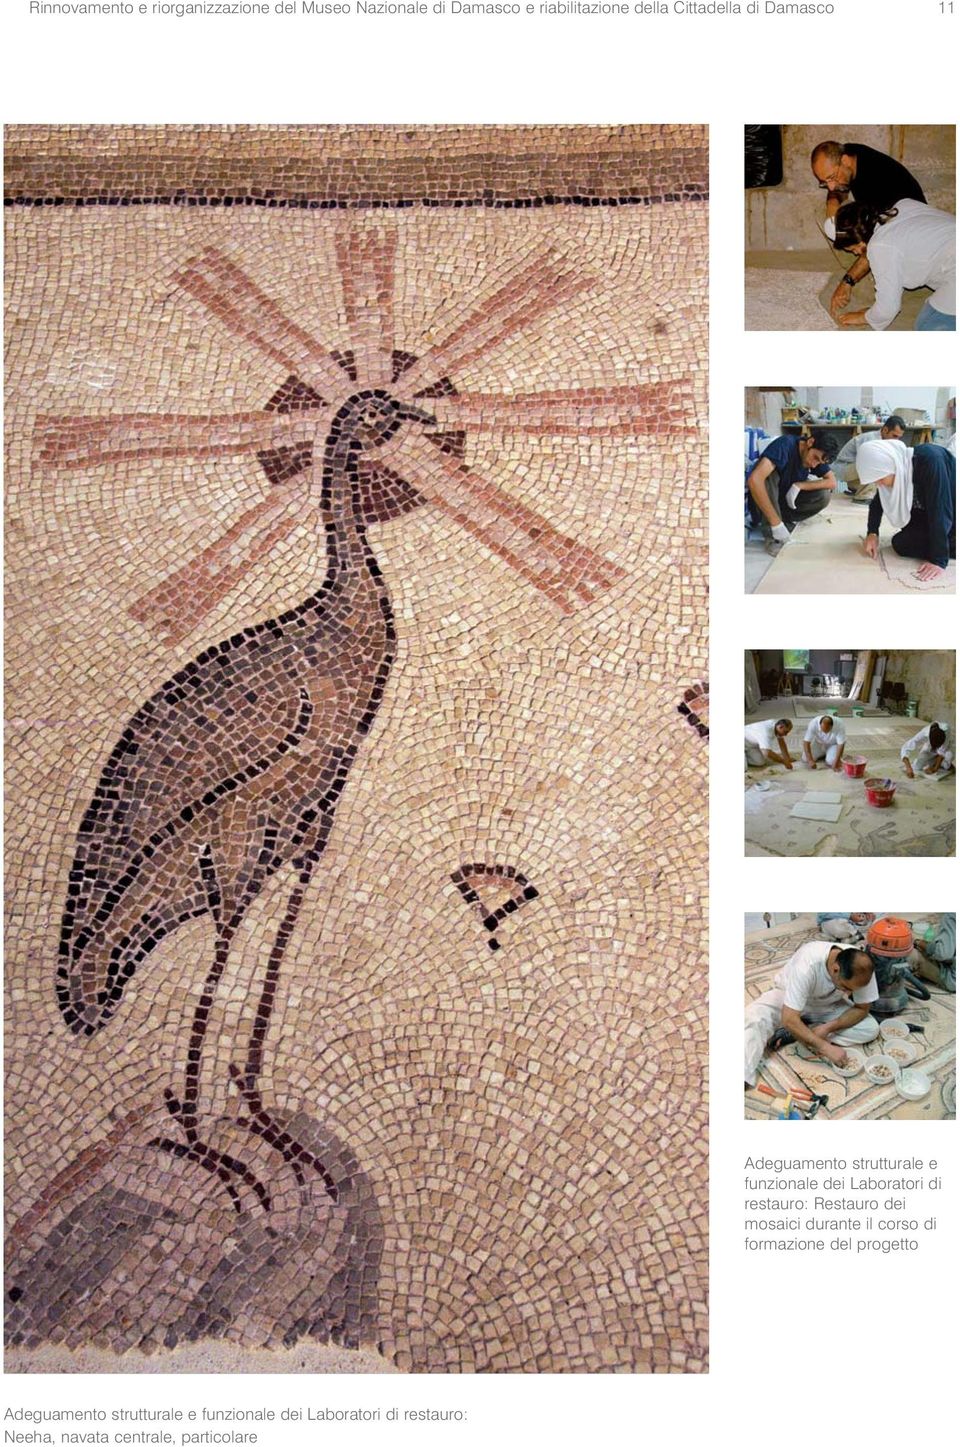 restauro: Restauro dei mosaici durante il corso di formazione del progetto